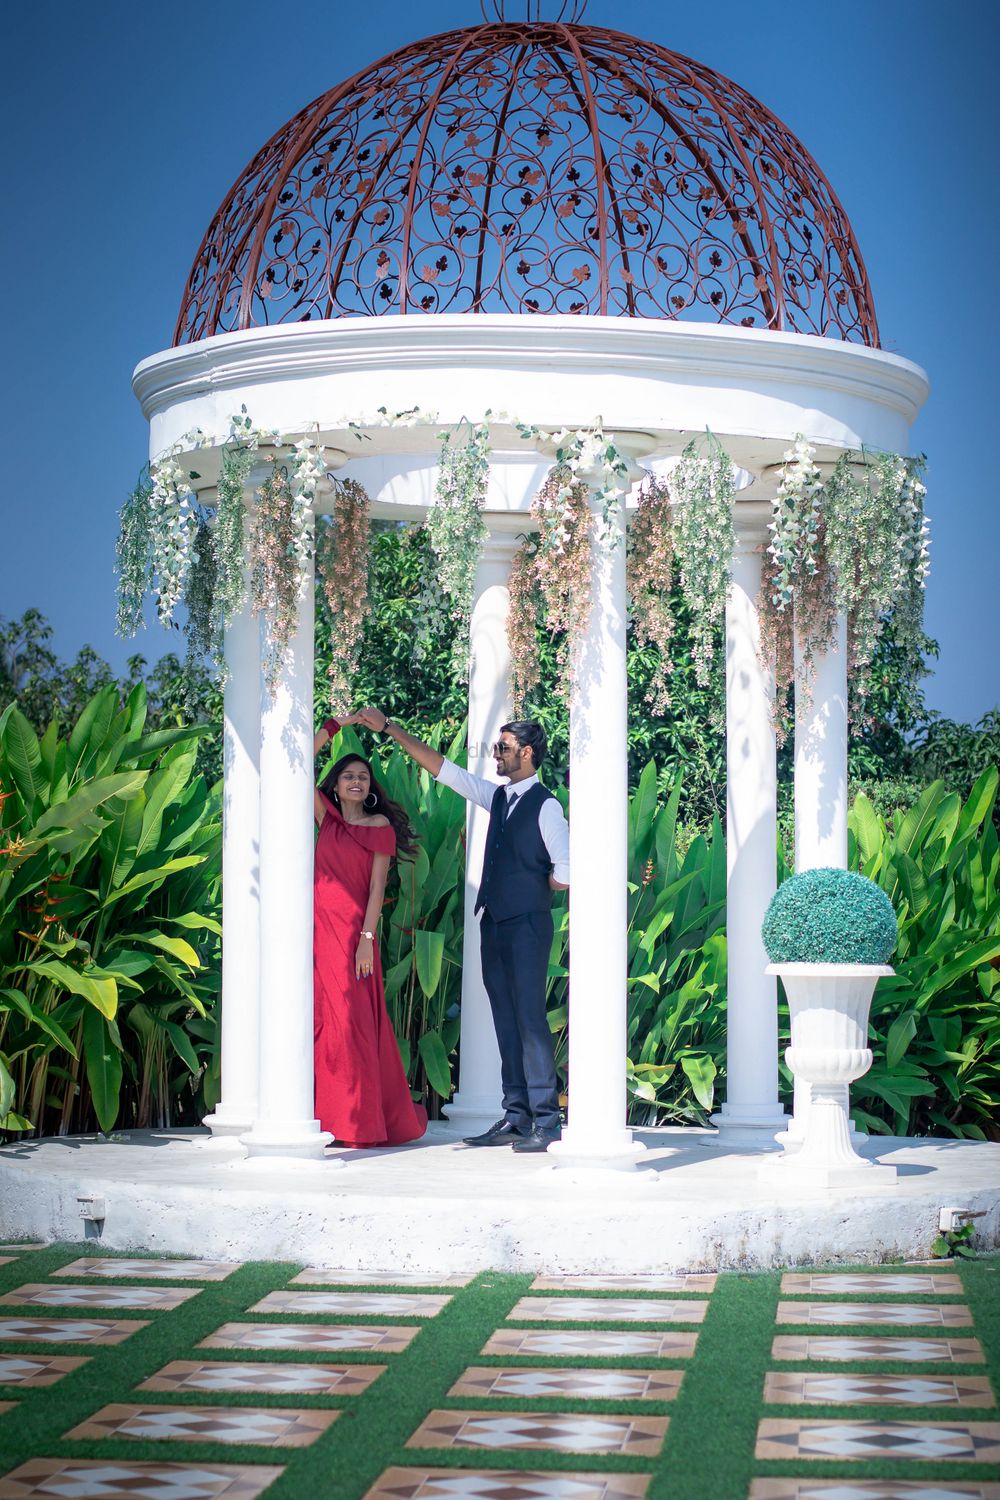 Photo From Priyanka & Dev Pre Wedding - By Hemal Vashi Photography